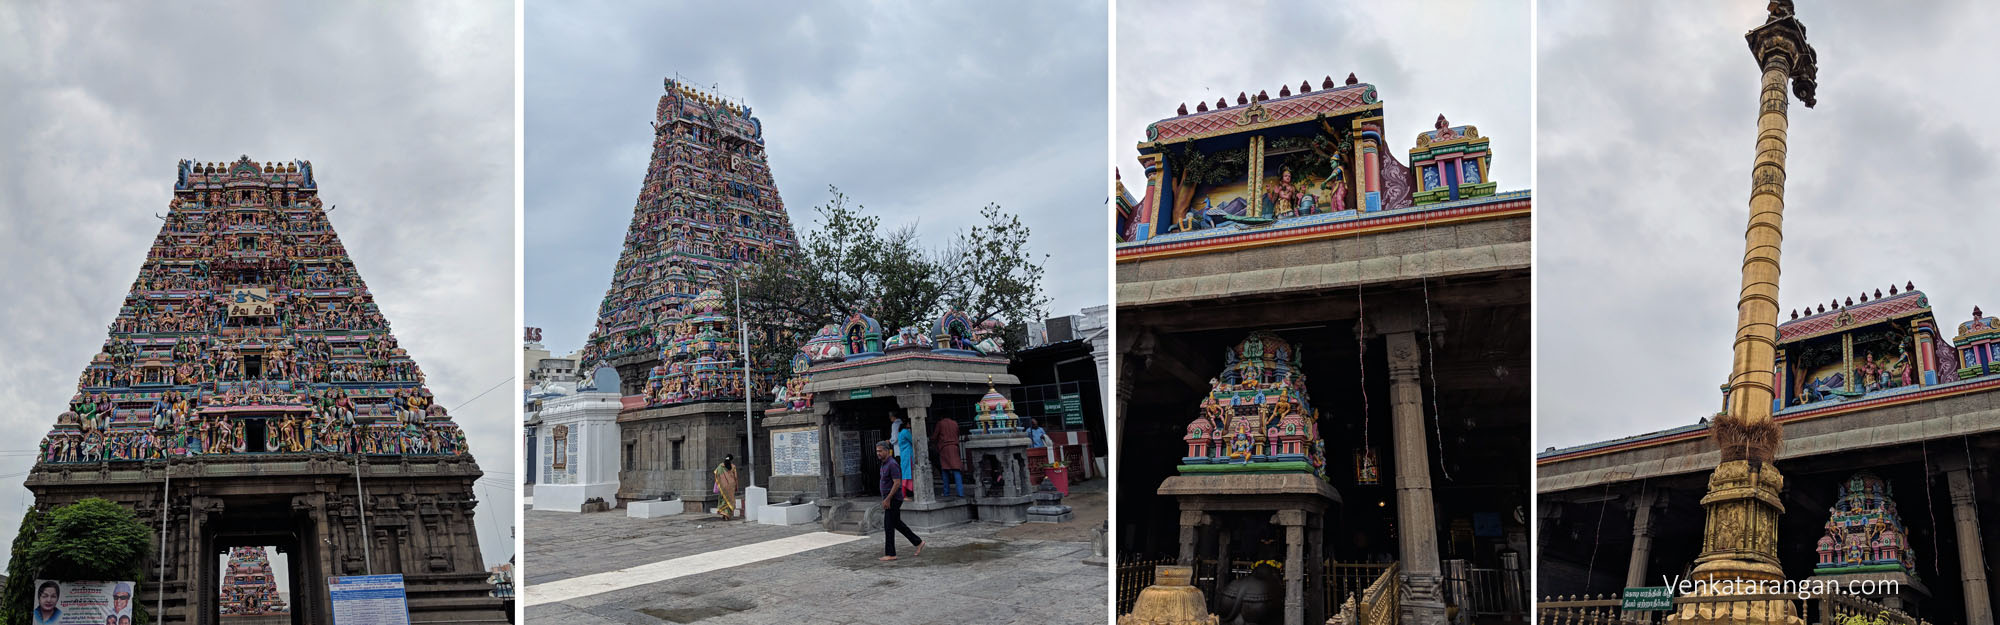 Kapaleeshwarar Temple – Madras Week Heritage Walk